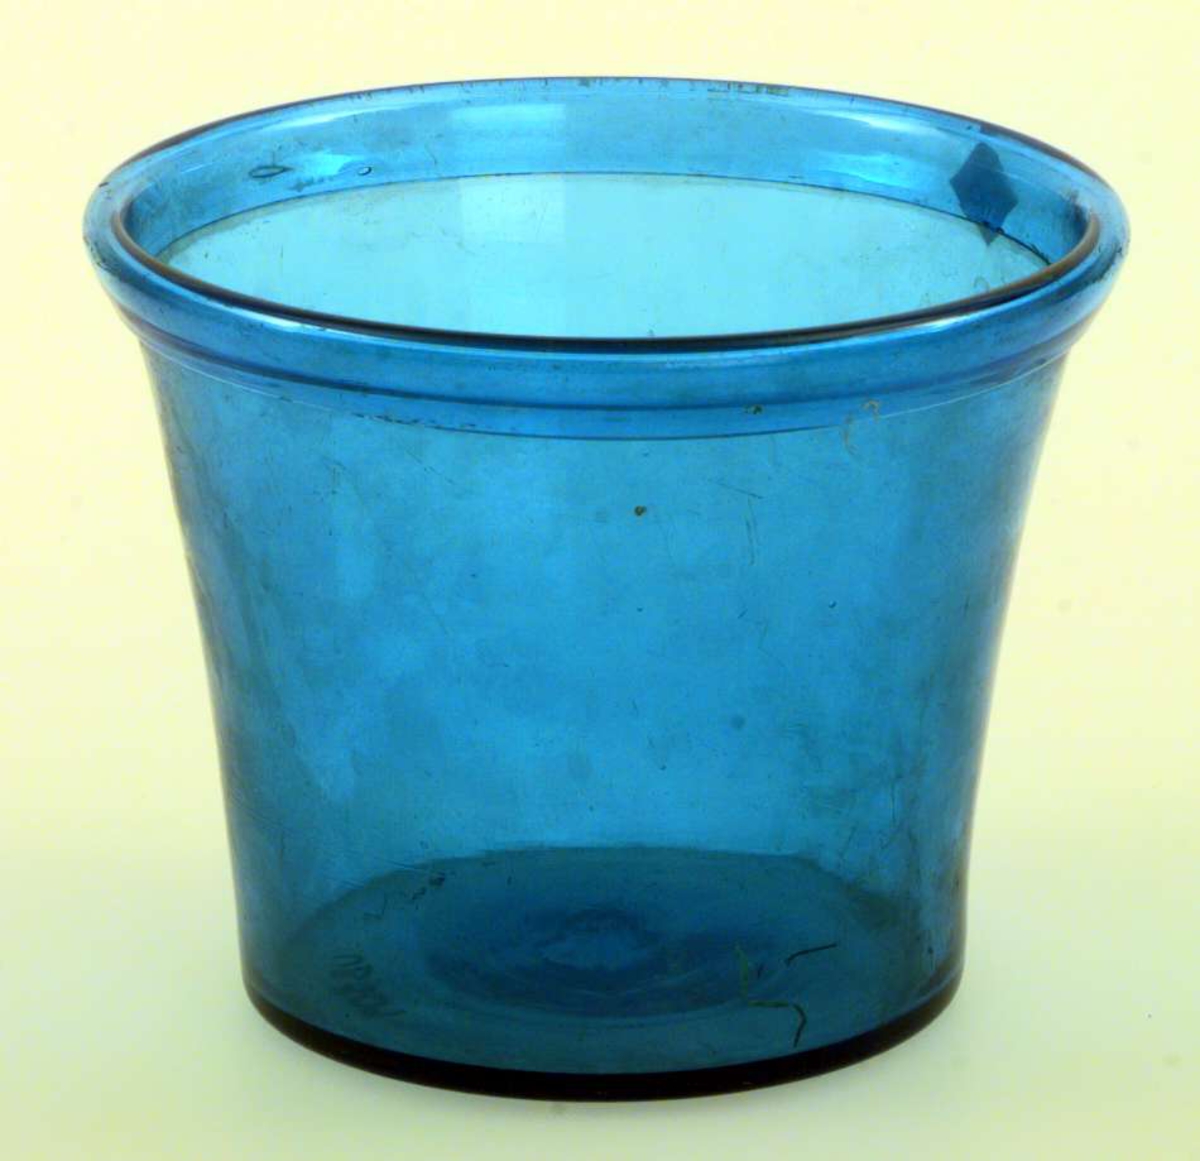 Urtepotte i blågrønt glass, ombrettet munningrand. Formen er konisk. 